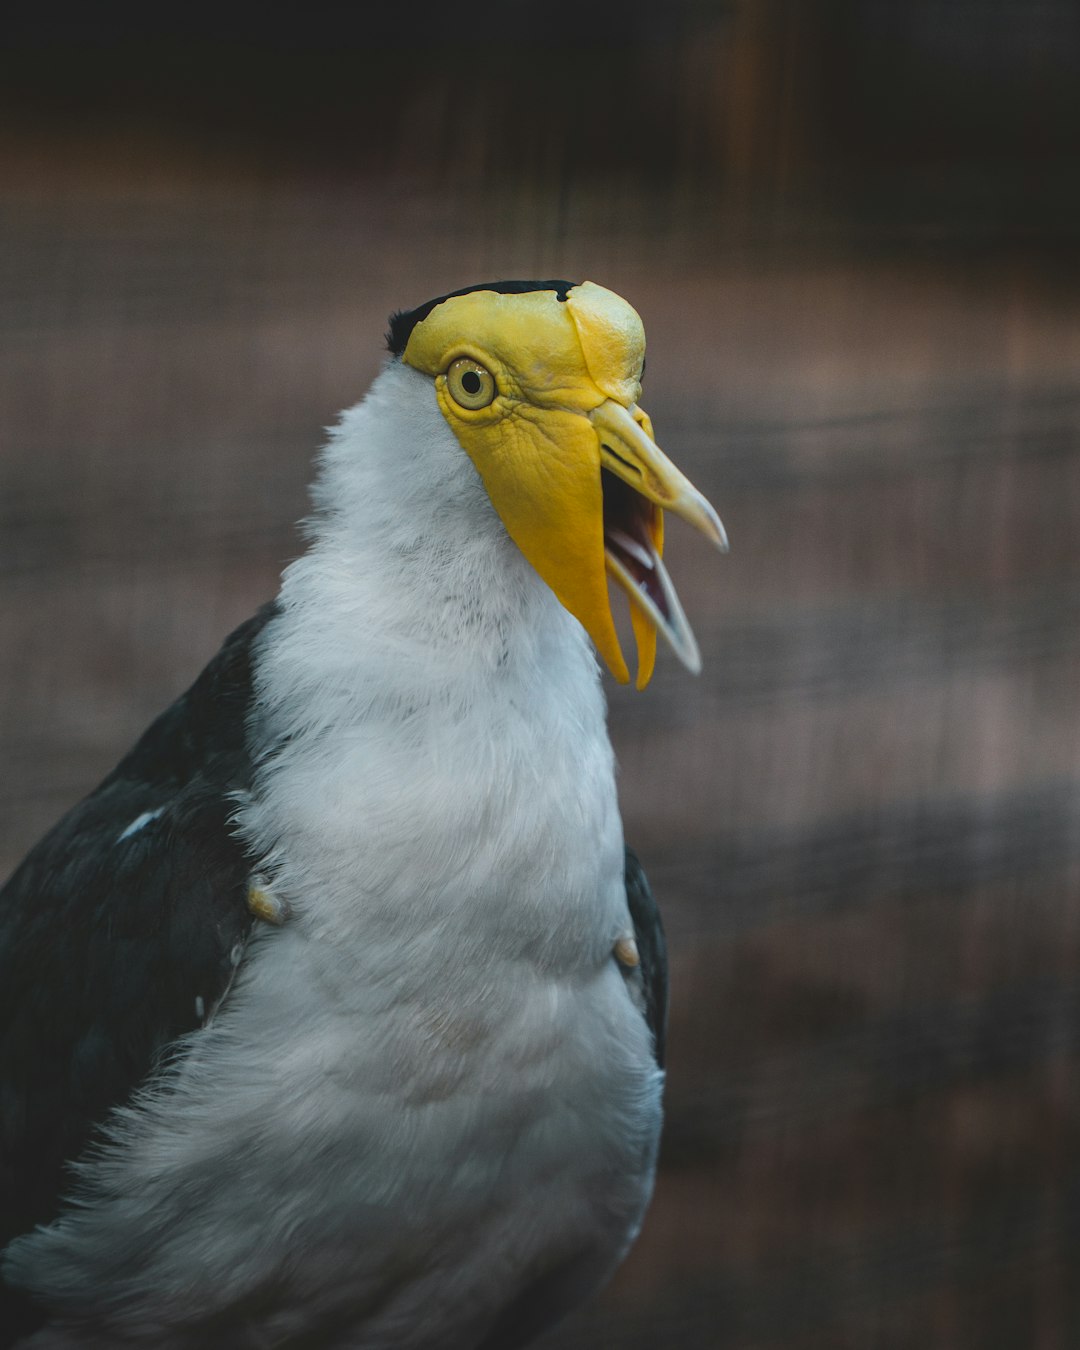 white and black bird with yellow beak